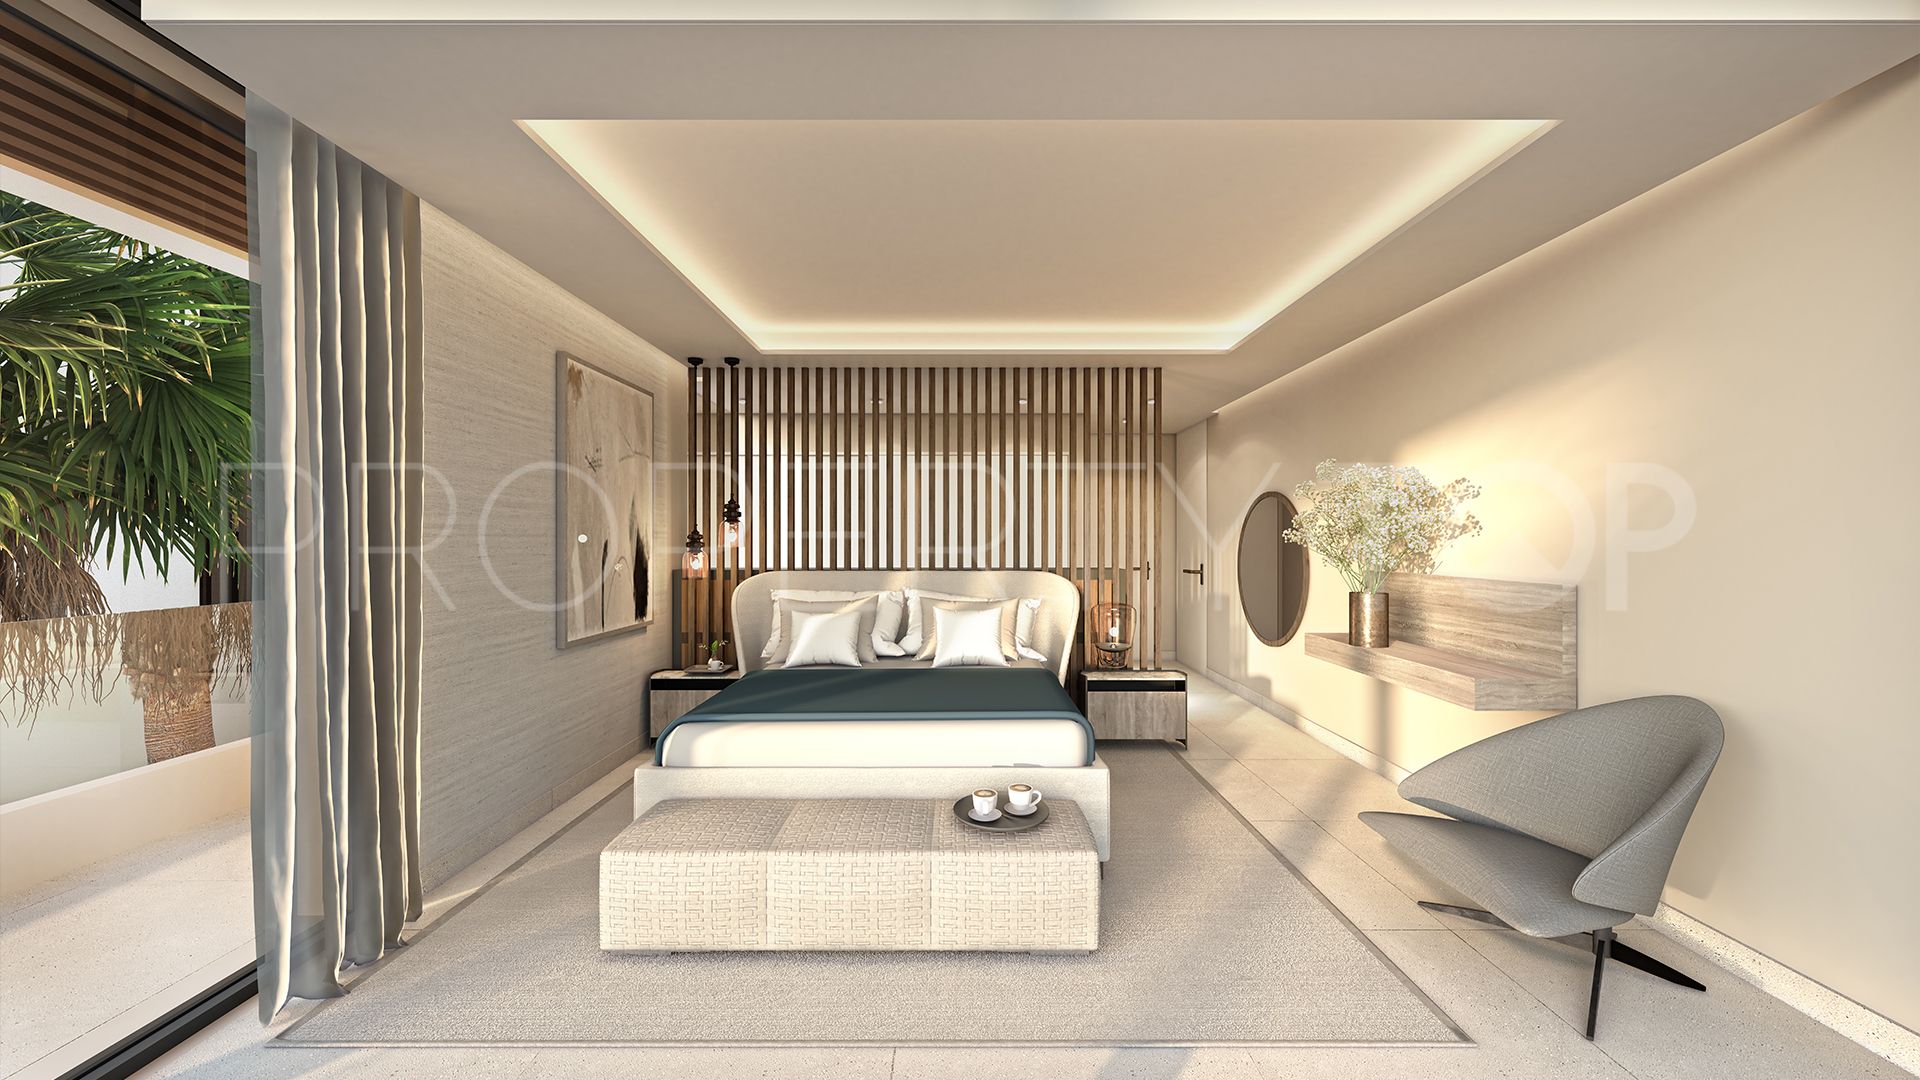 For sale villa in Marbella - Puerto Banus with 4 bedrooms